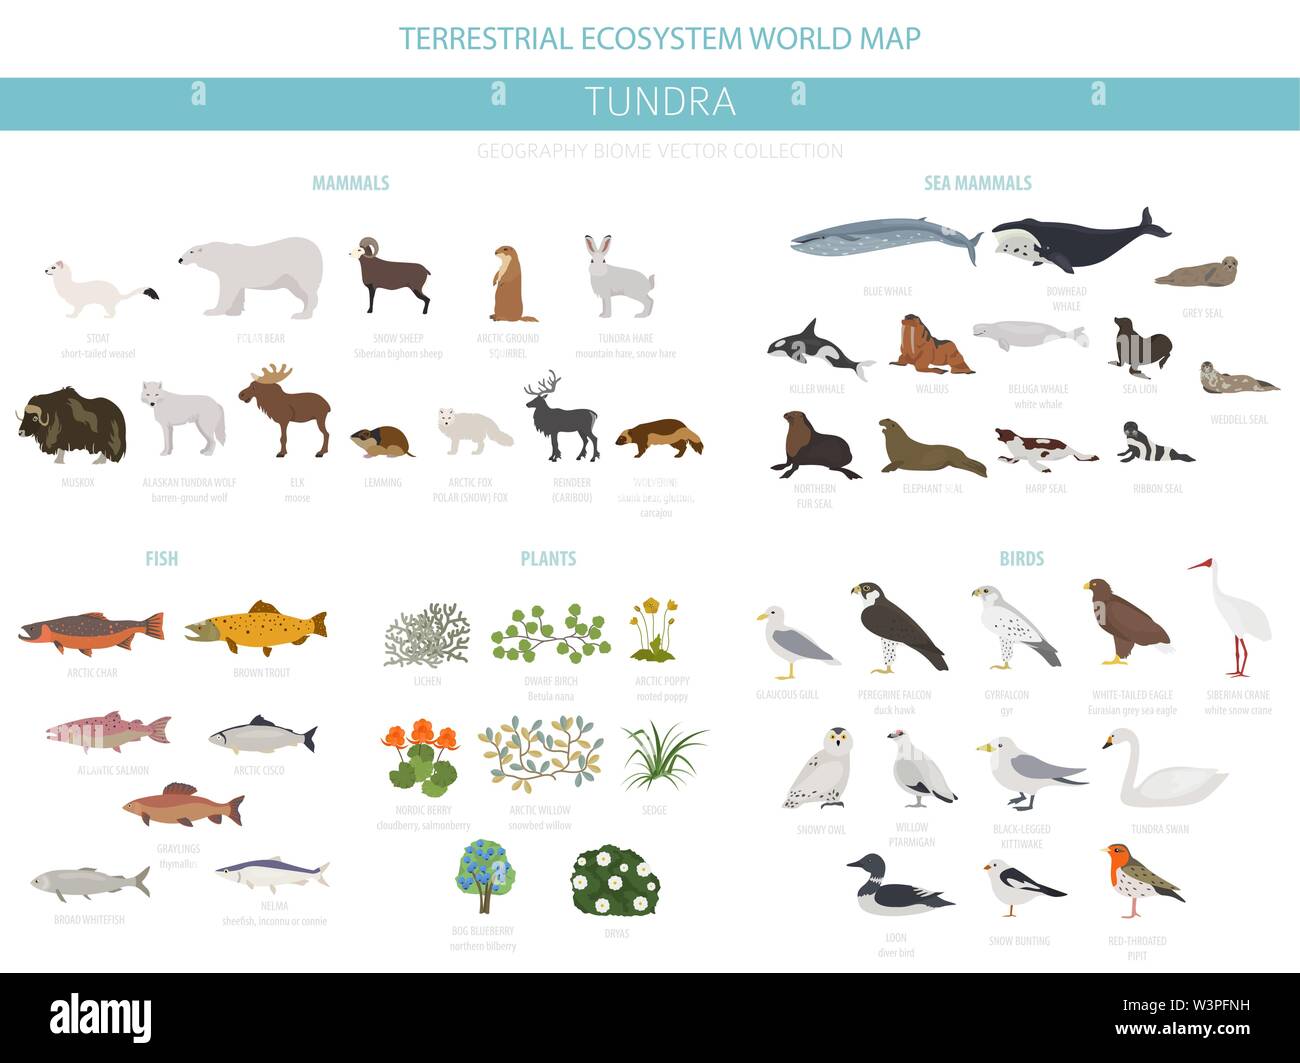 Tundra biome. Terrestrischen Ökosystem Weltkarte. Arktische Tiere, Vögel, Fische und Pflanzen Infografik Design. Vector Illustration Stock Vektor